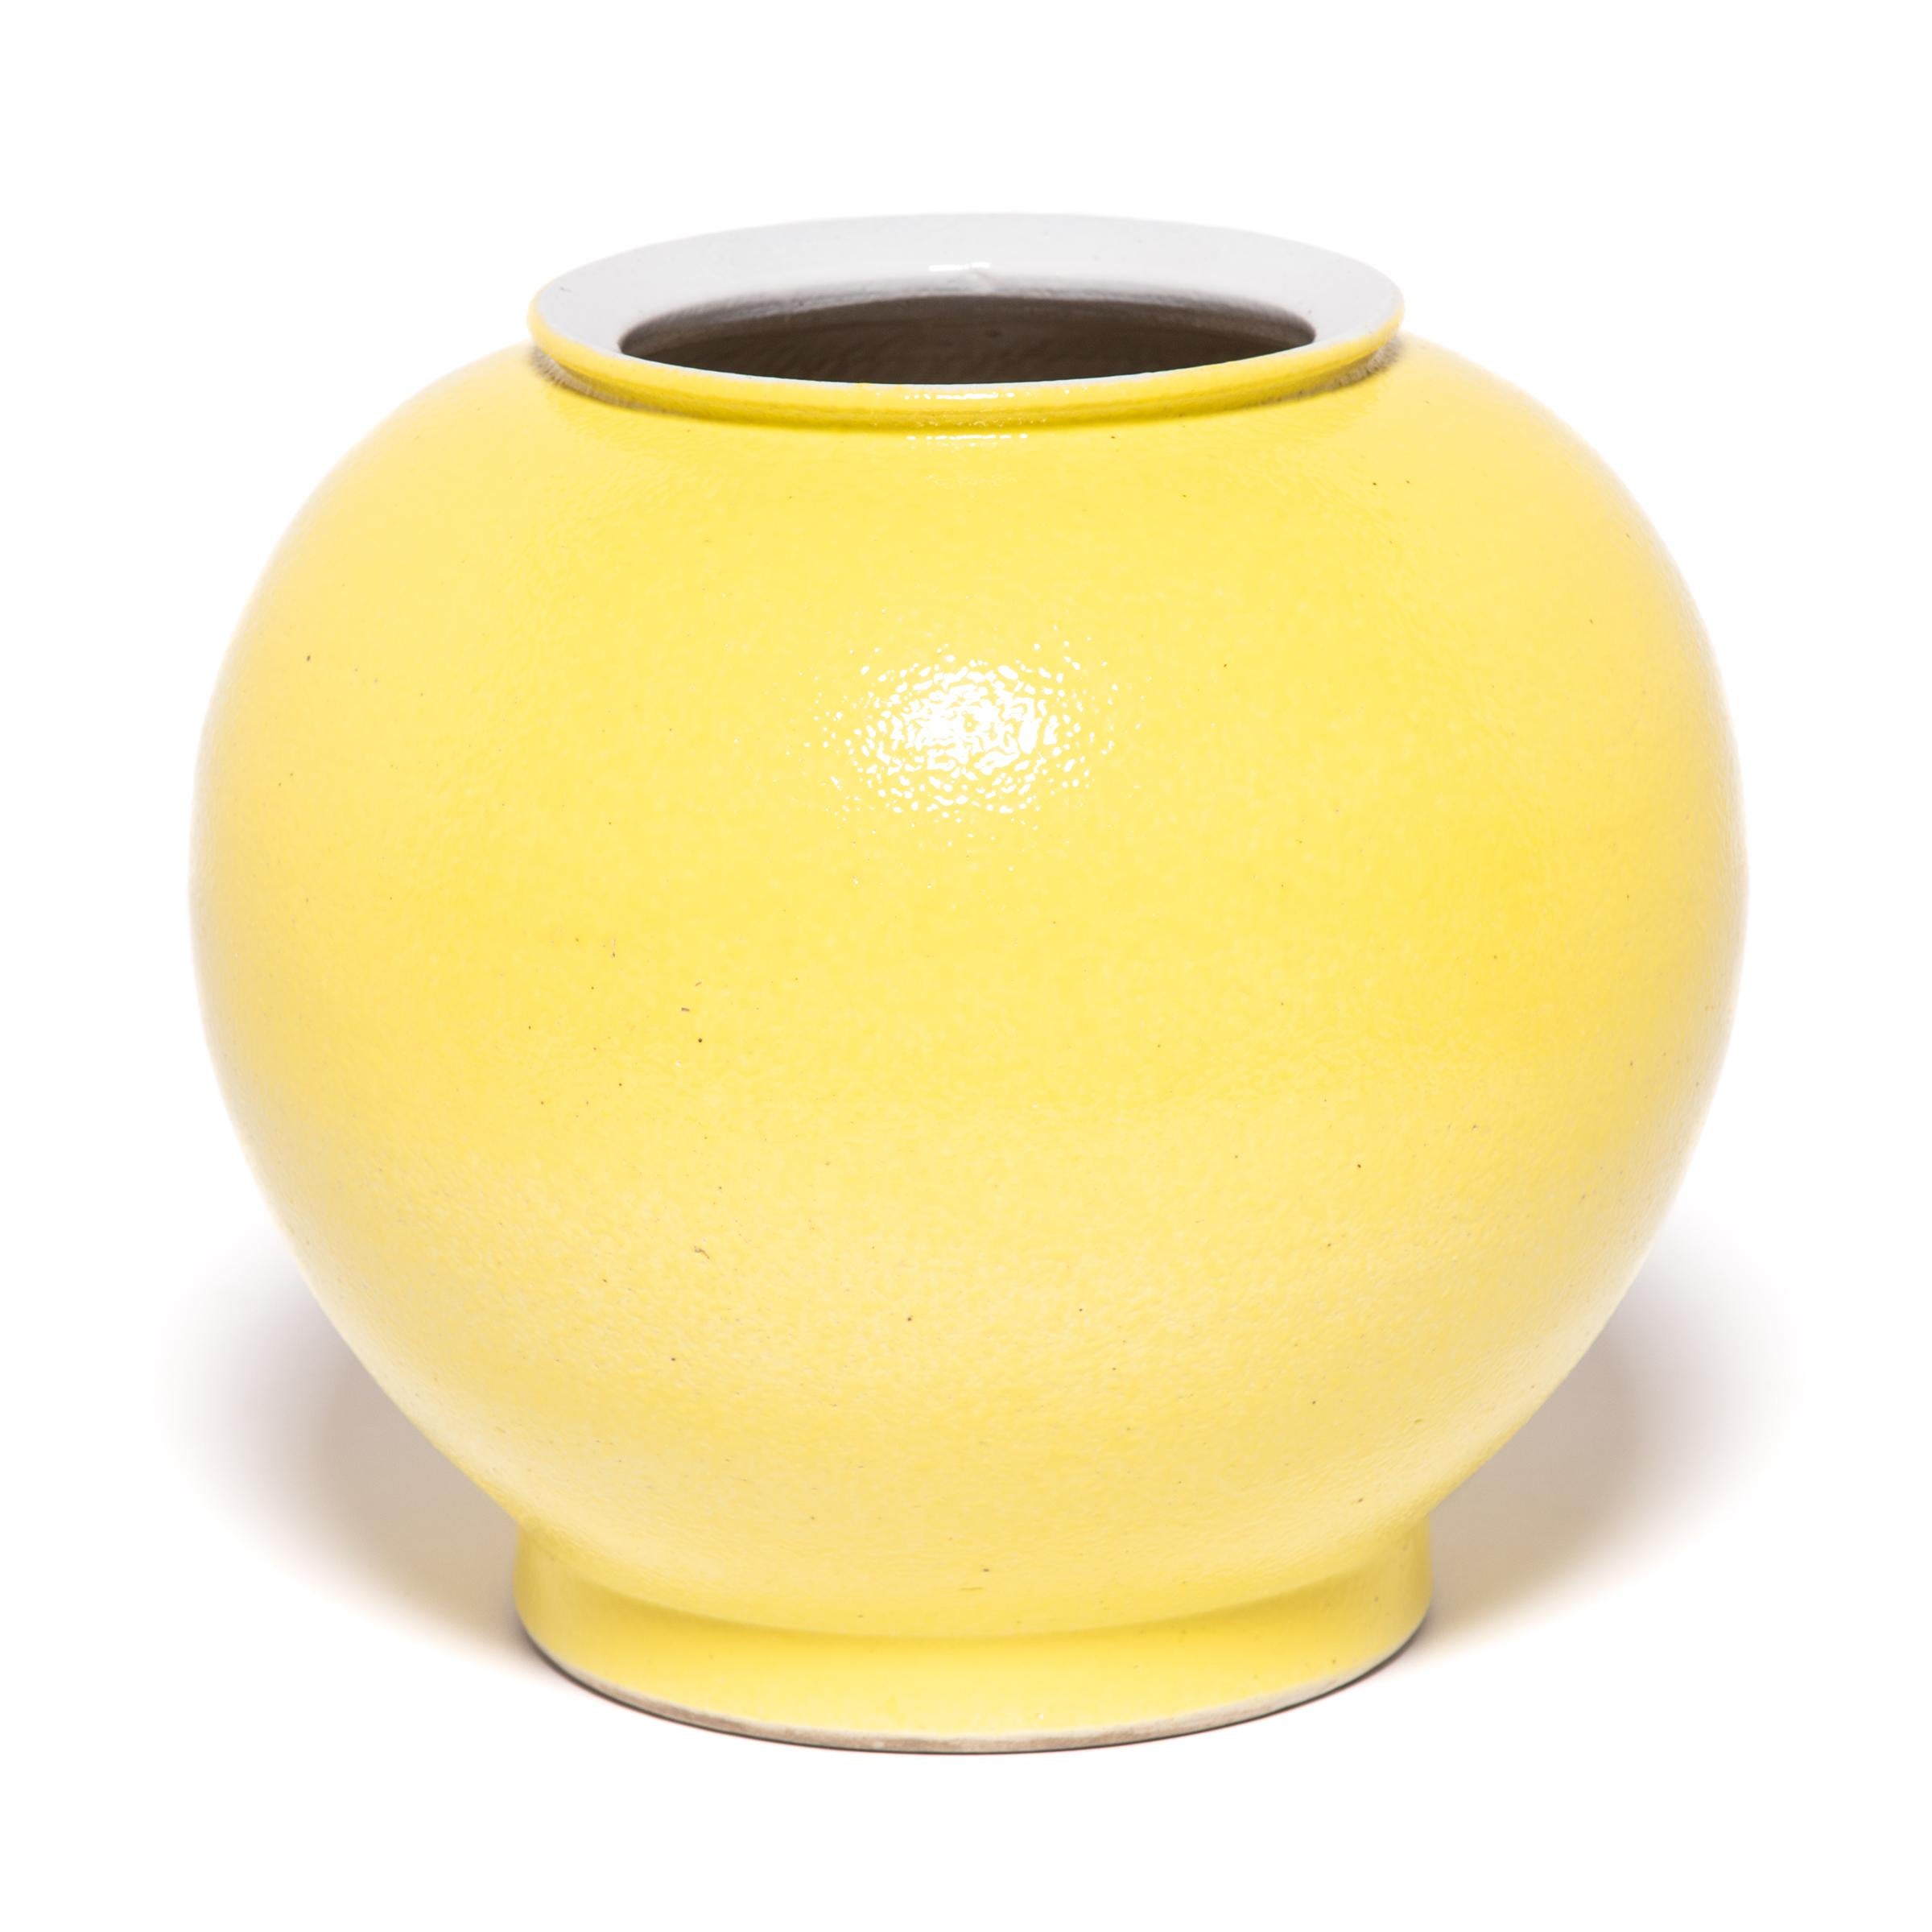 Das auffallend leuchtende Gelb dieser Vase geht auf eine lange chinesische Tradition zurück, bei der skulpturale Formen mit einer einzigen, aussagekräftigen Farbe glasiert werden. Diese zeitgenössische Variante hüllt die runden Kurven der